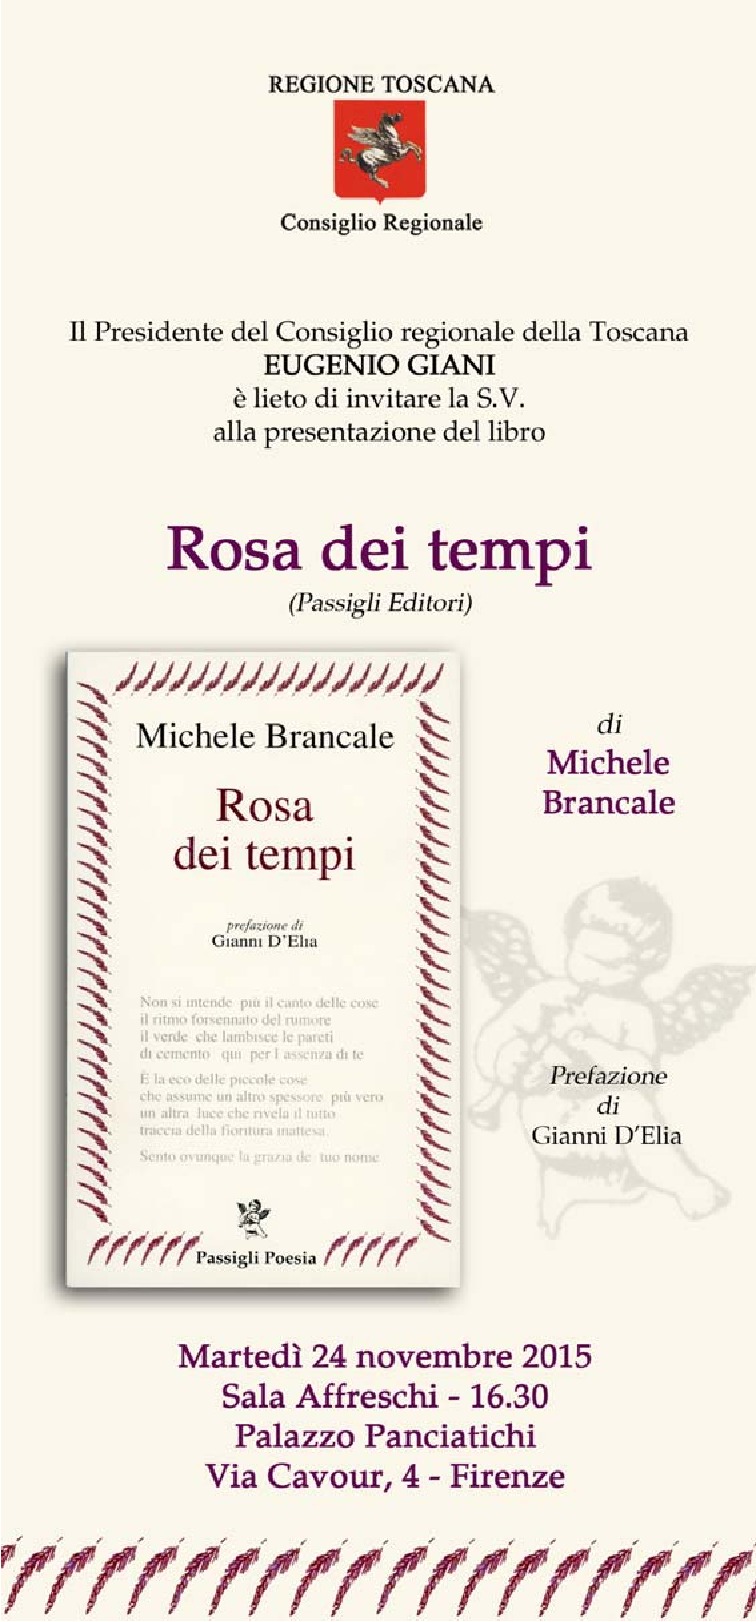 L'invito per la presentazione di 'Rosa dei tempi' di Michele Brancale